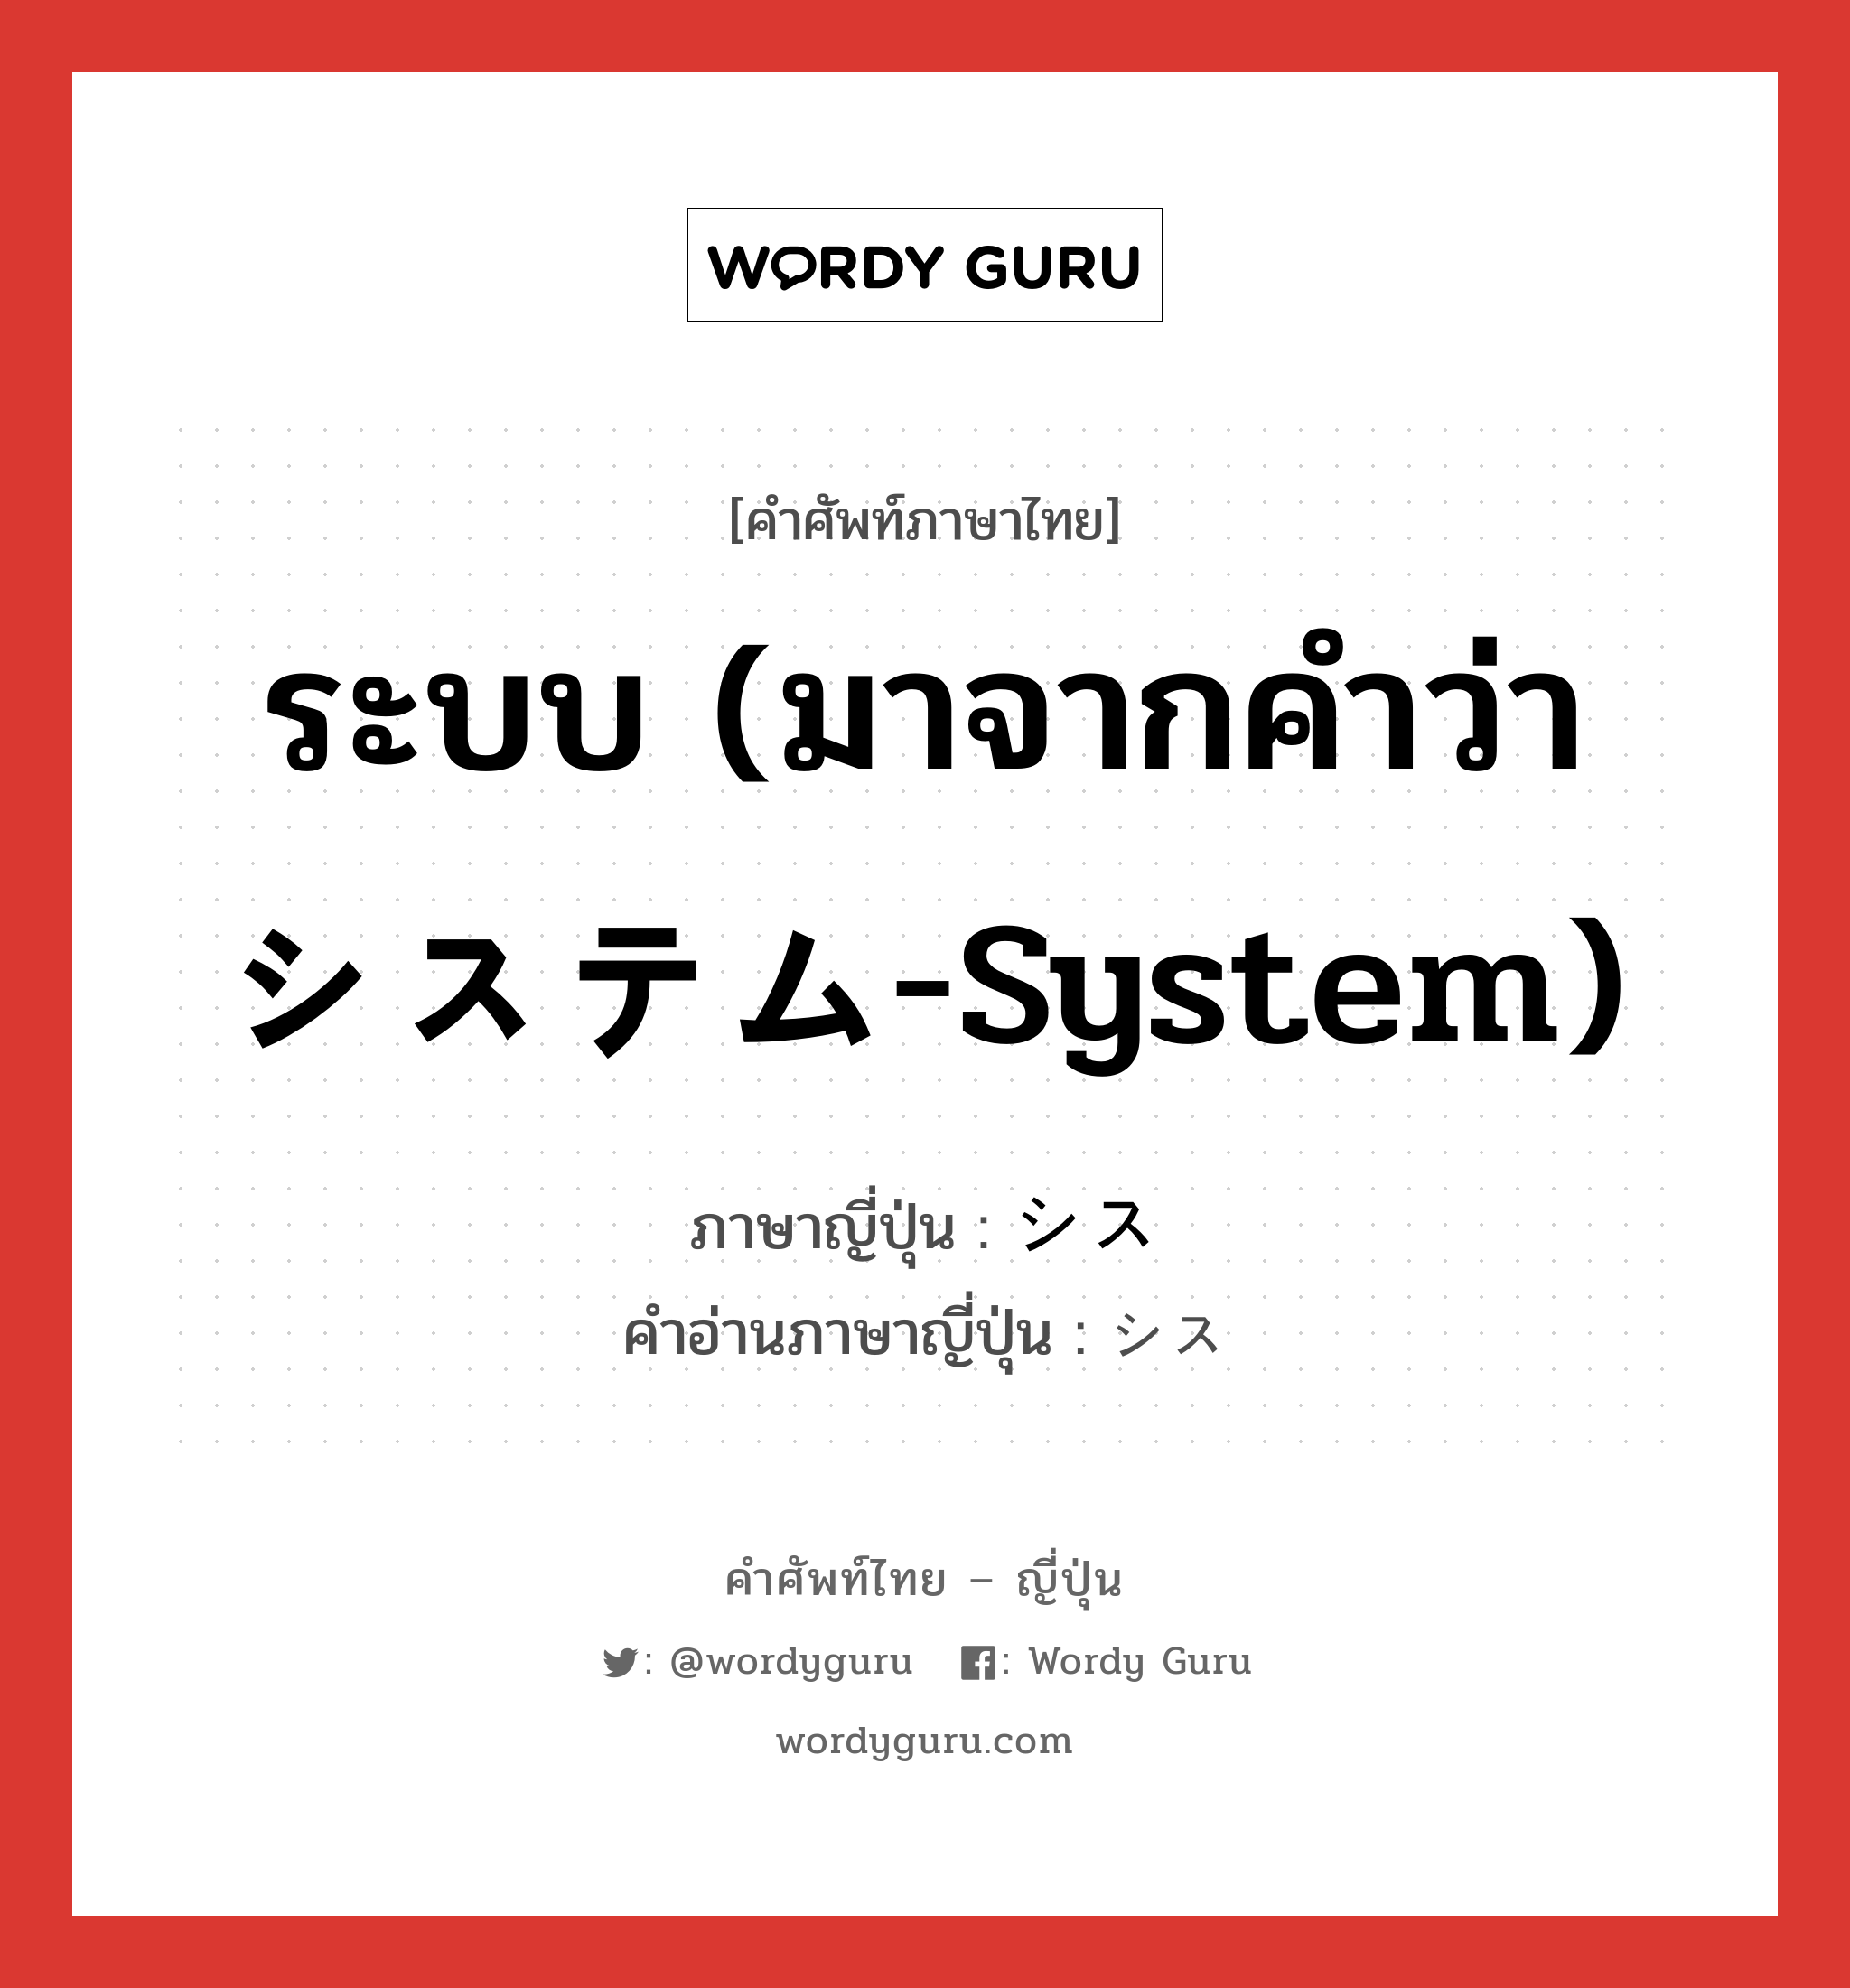 ระบบ (มาจากคำว่า システム-System) ภาษาญี่ปุ่นคืออะไร, คำศัพท์ภาษาไทย - ญี่ปุ่น ระบบ (มาจากคำว่า システム-System) ภาษาญี่ปุ่น シス คำอ่านภาษาญี่ปุ่น シス หมวด n หมวด n